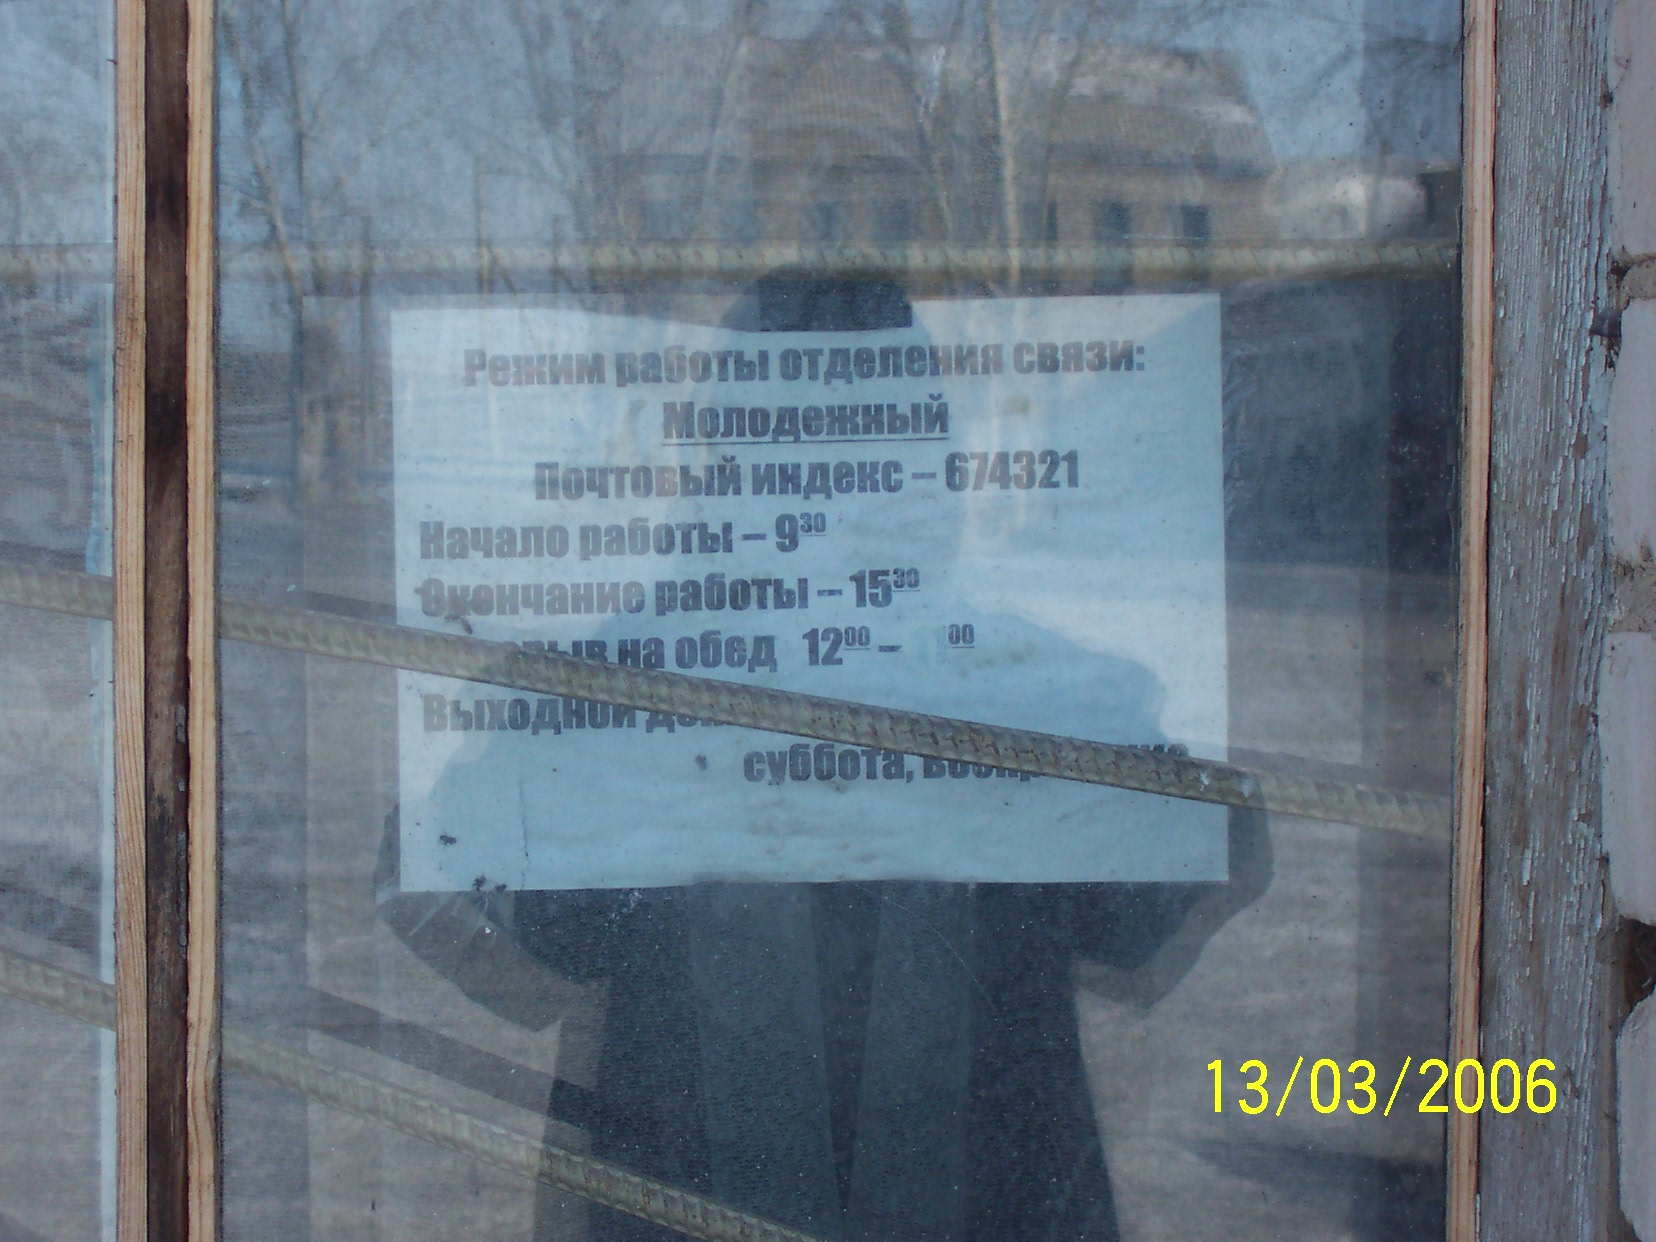 ФАСАД, отделение почтовой связи 674321, Забайкальский край, Приаргунский р-он, Молодежный